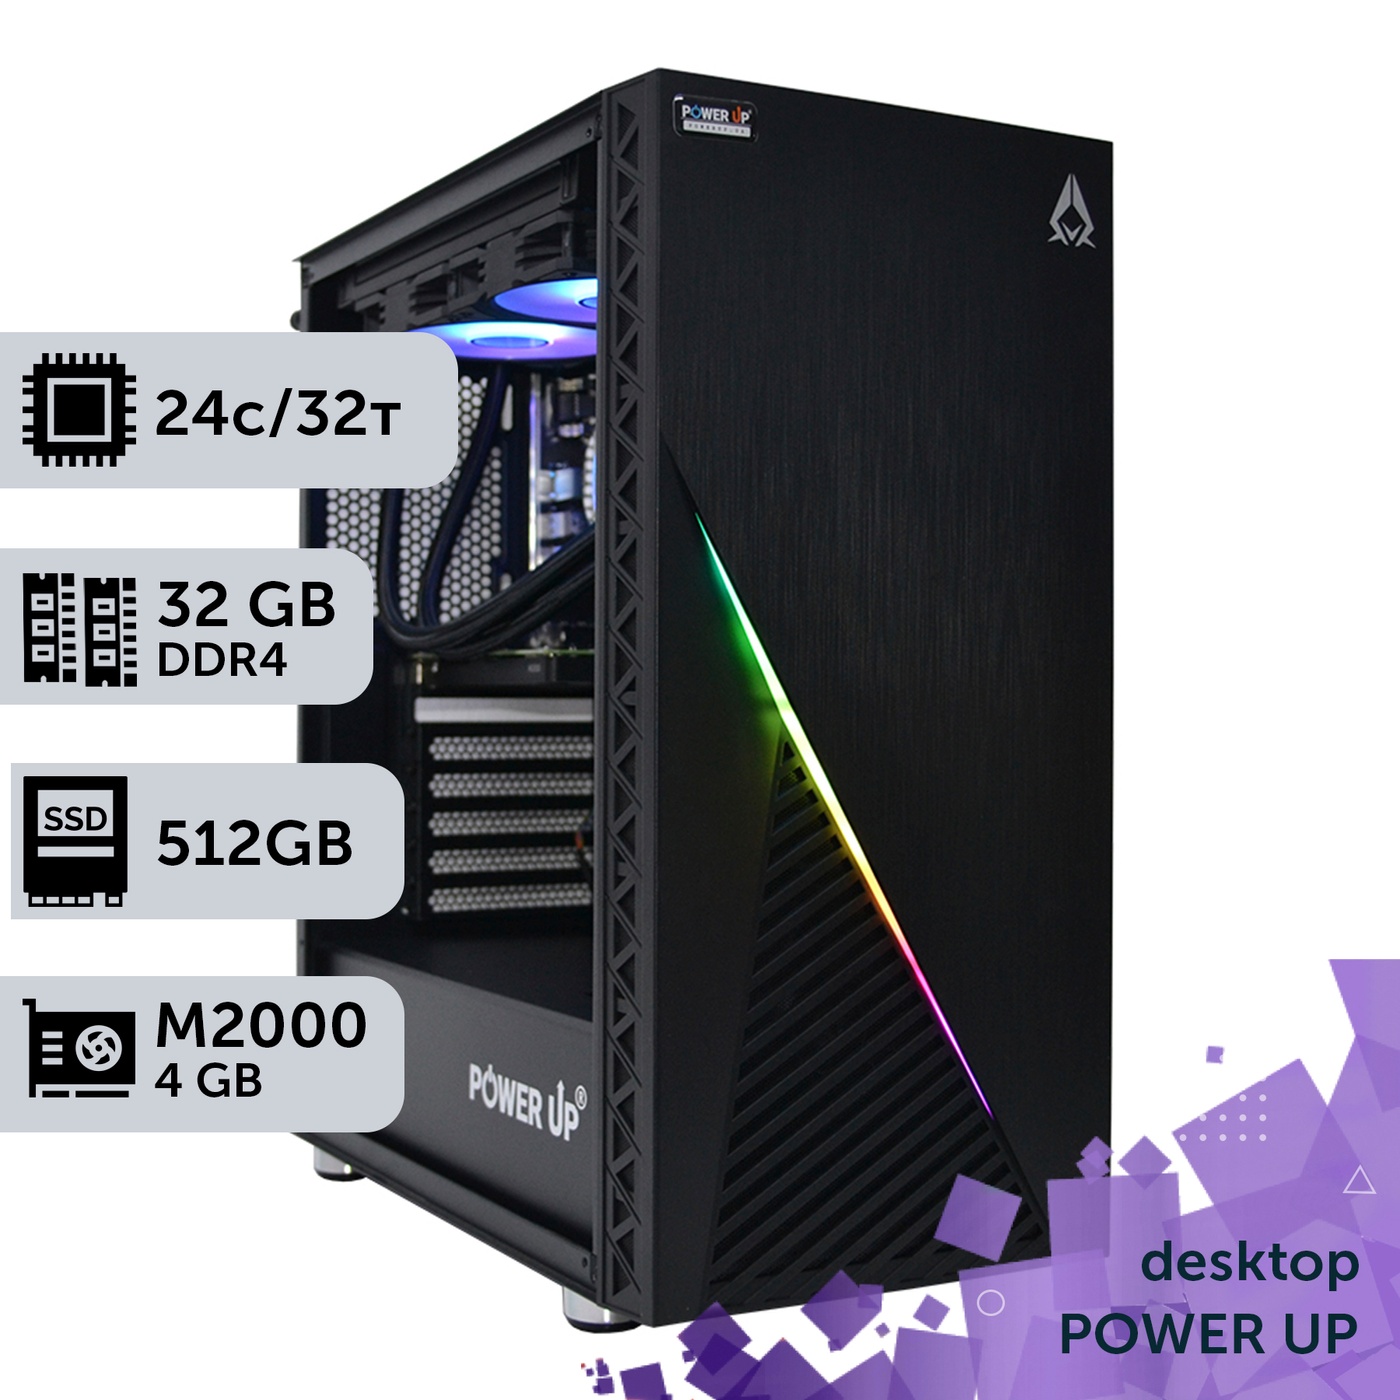 Рабочая станция PowerUp Desktop #218 Core i7 13700K/32 GB/SSD 512GB/NVIDIA Quadro M2000 4GB